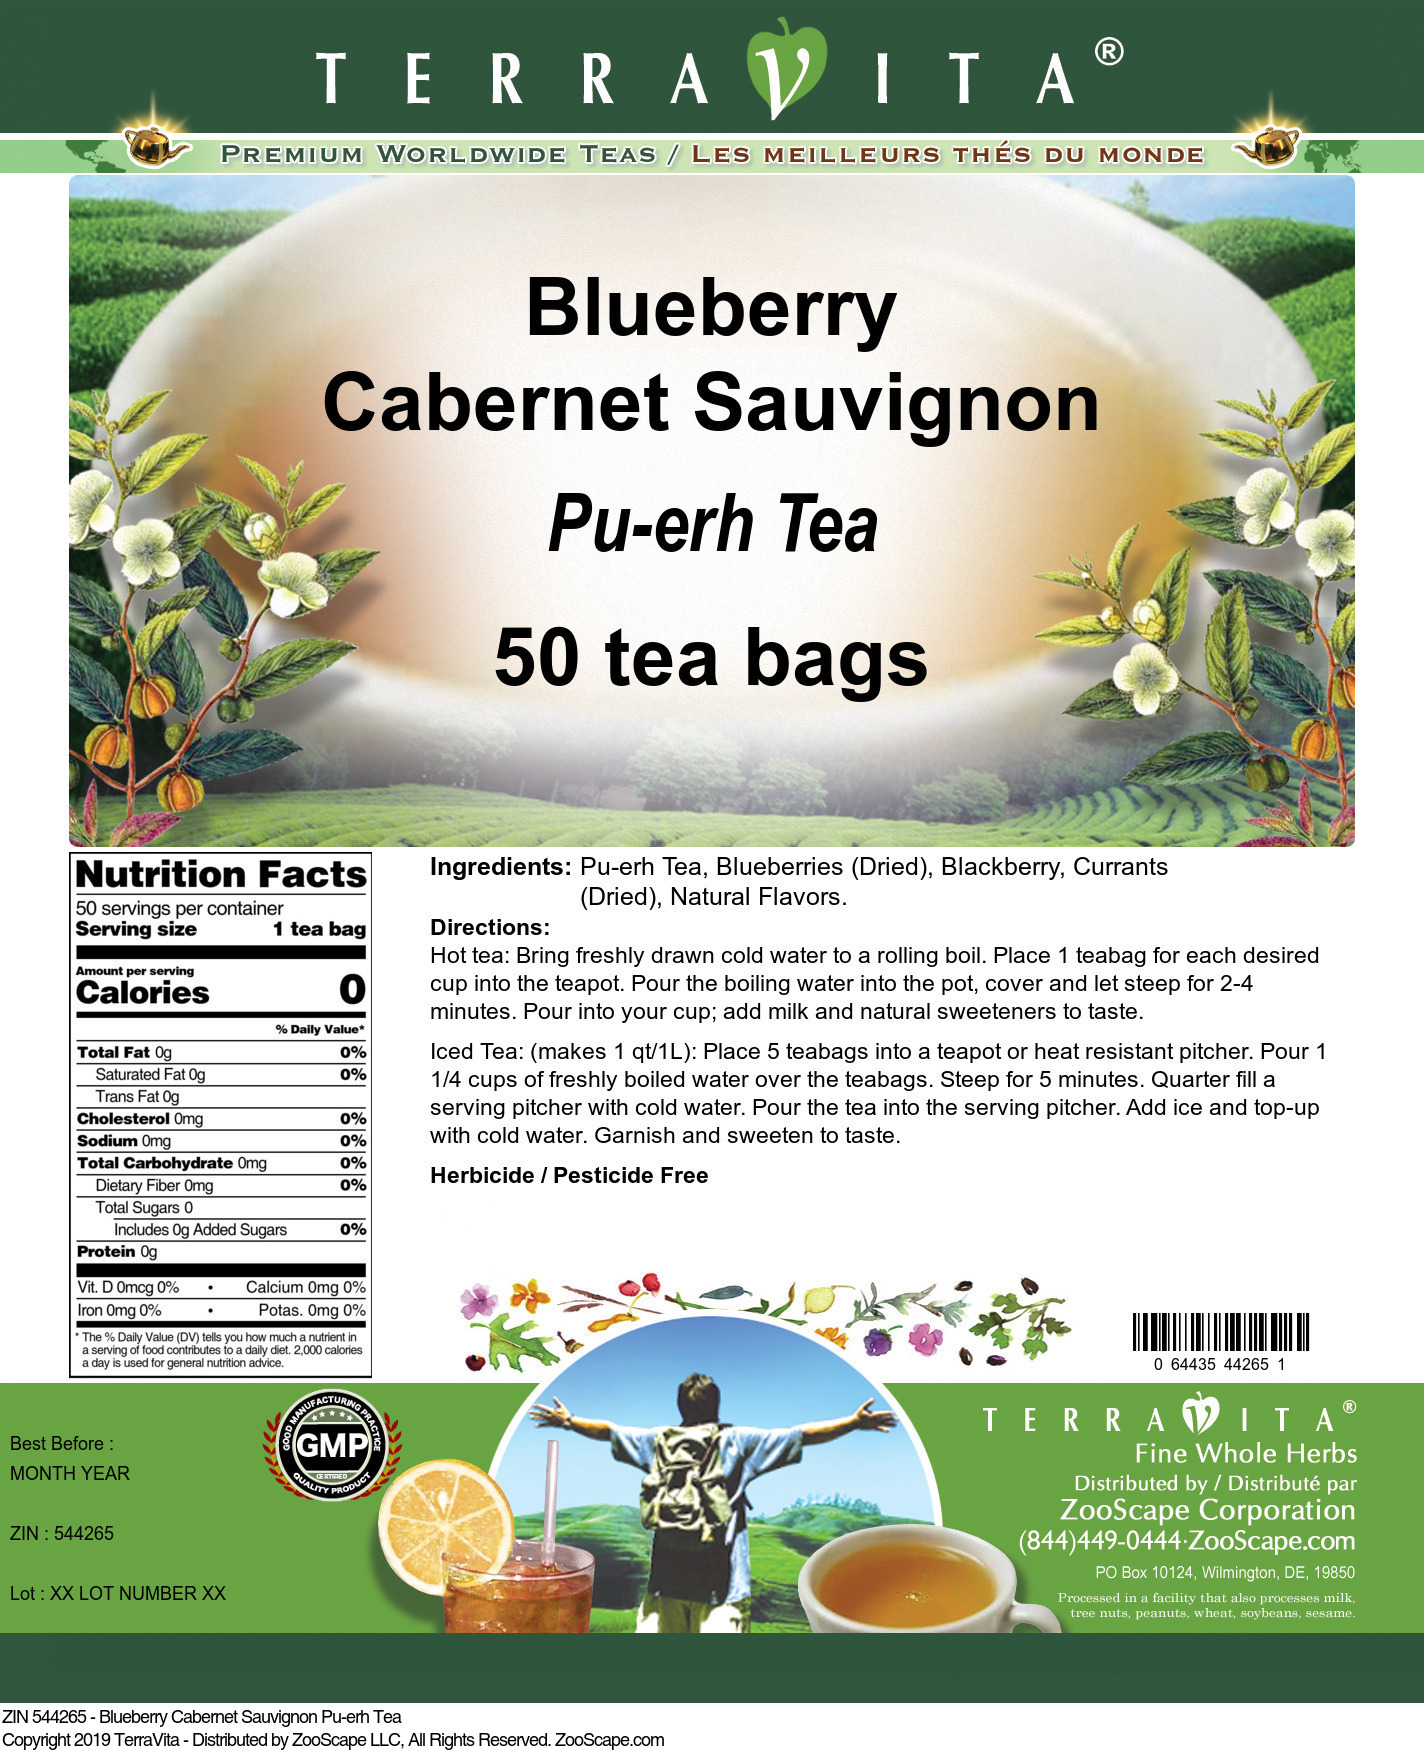 Blueberry Cabernet Sauvignon Pu-erh Tea - Label